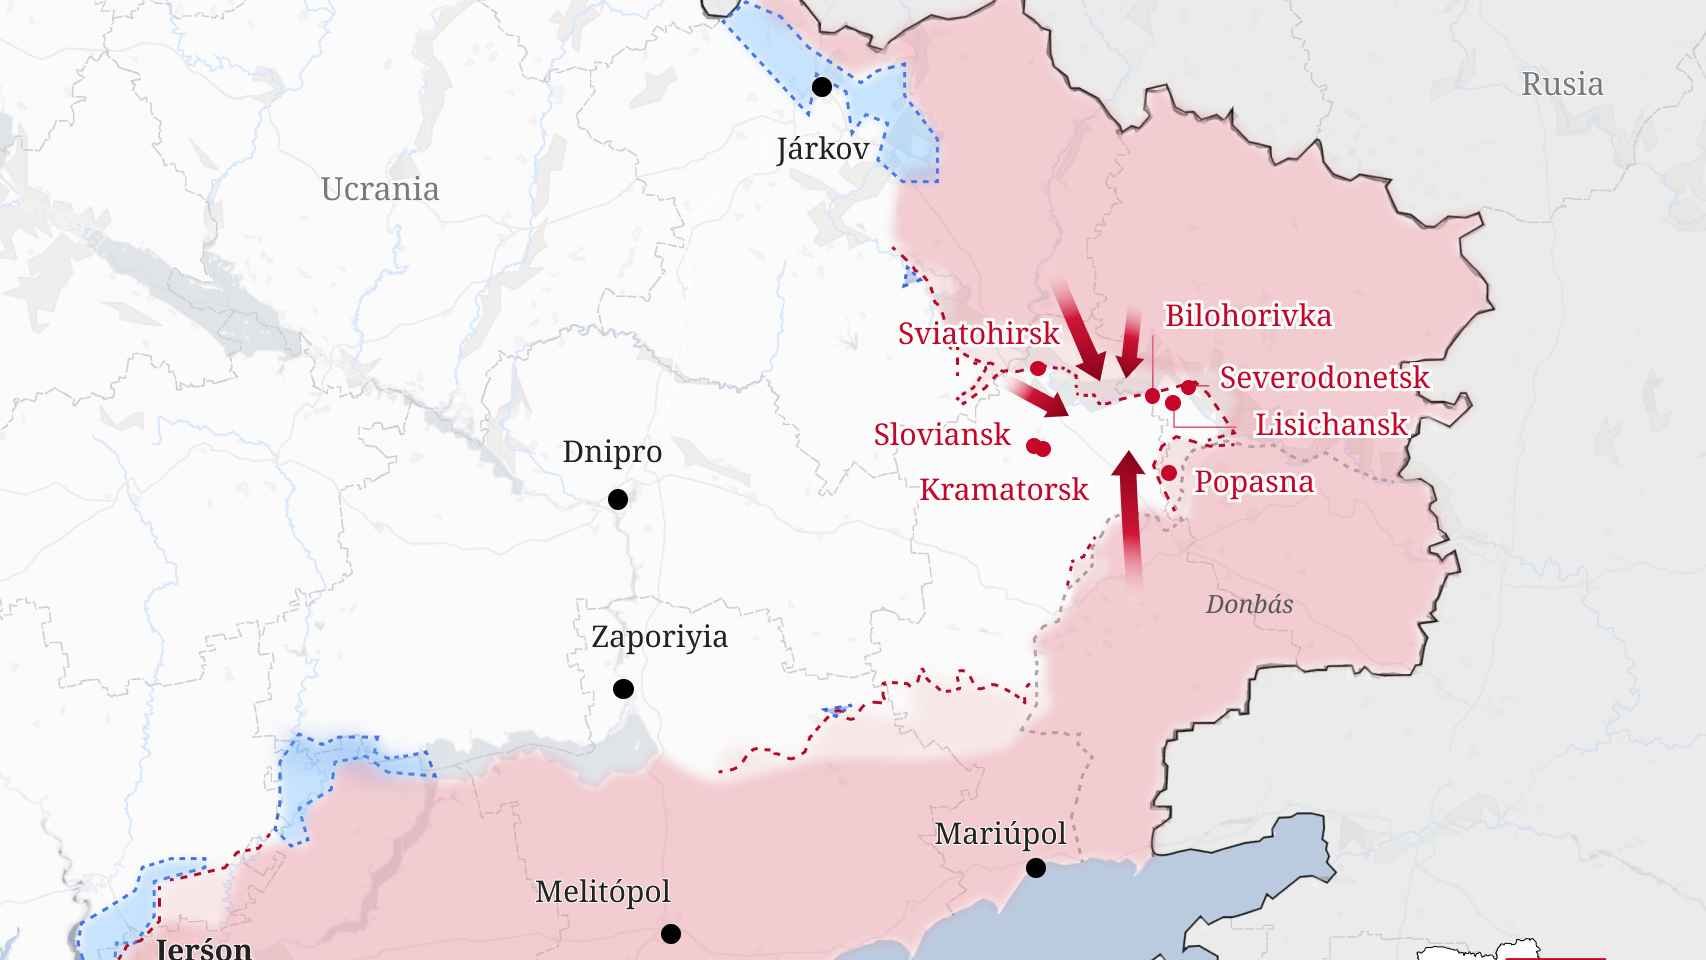 Mapa actualizado de los focos de la guerra en Ucrania.